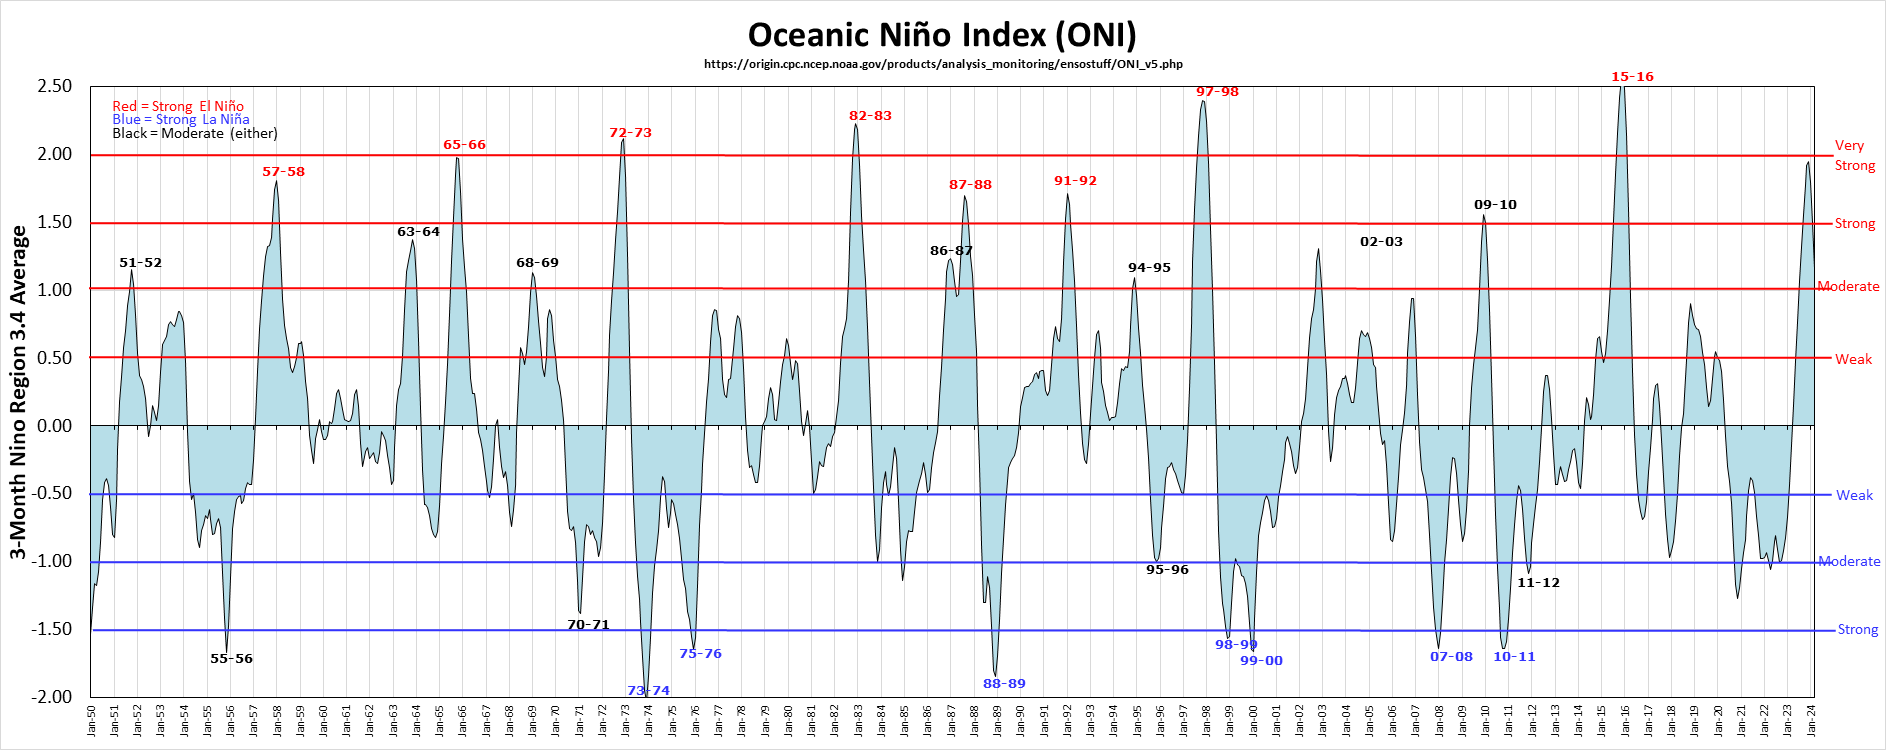 El Niño and La Niña episodes